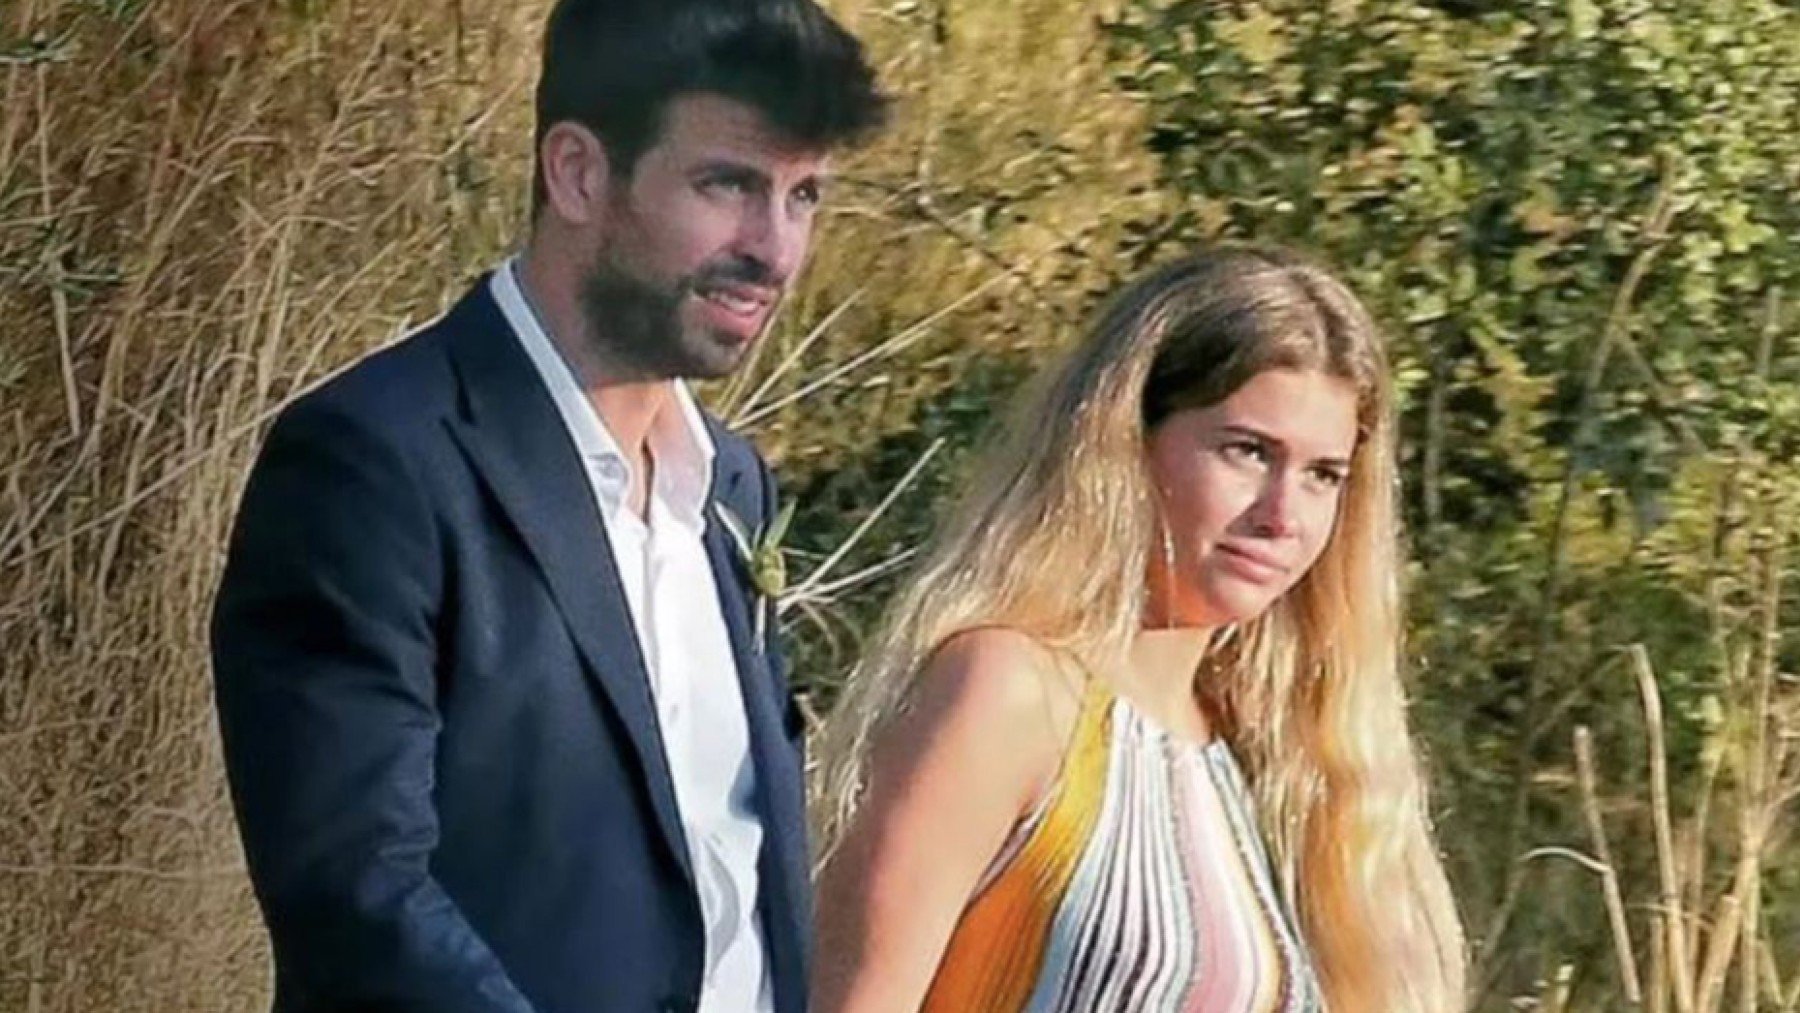 Clara Chía y Piqué, grabados viendo el videoclip 'Monotonía' de Shakira: reacción sorprendente